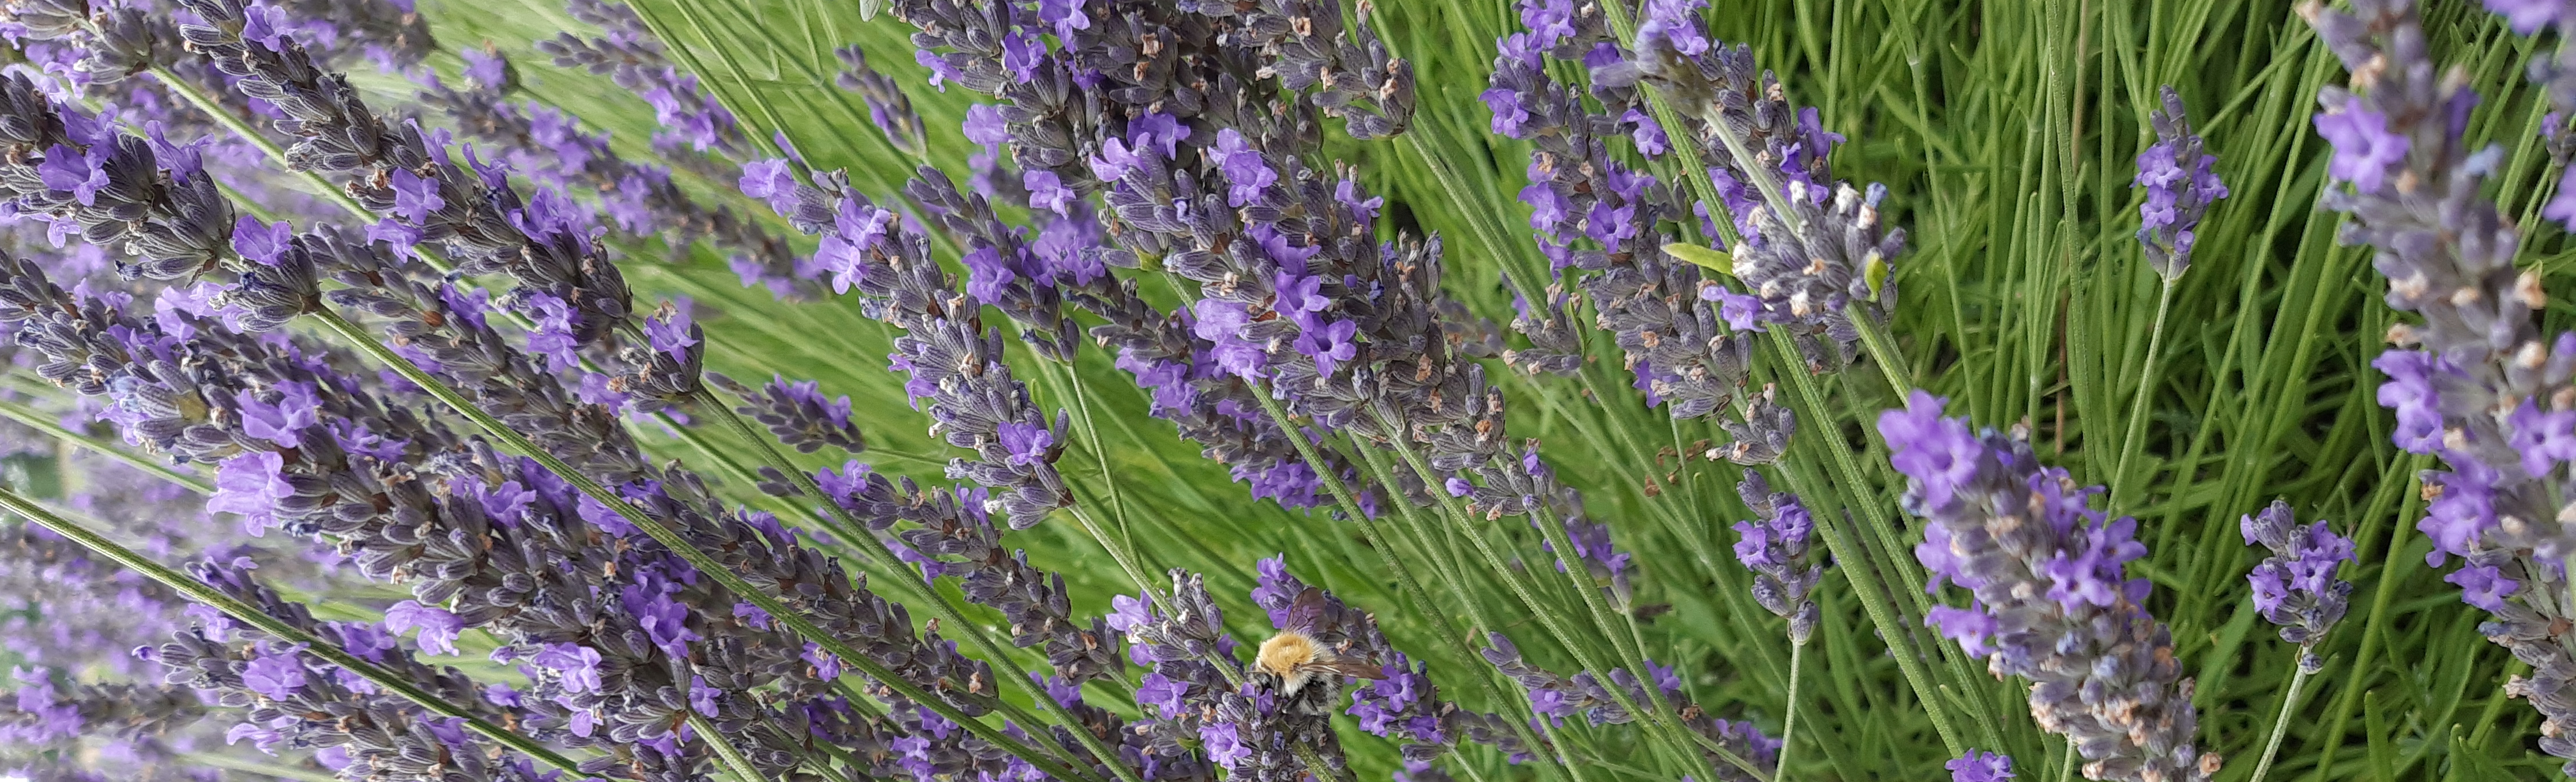 Eine Ackerhummel sammelt Pollen und Nektar an Lavendel.